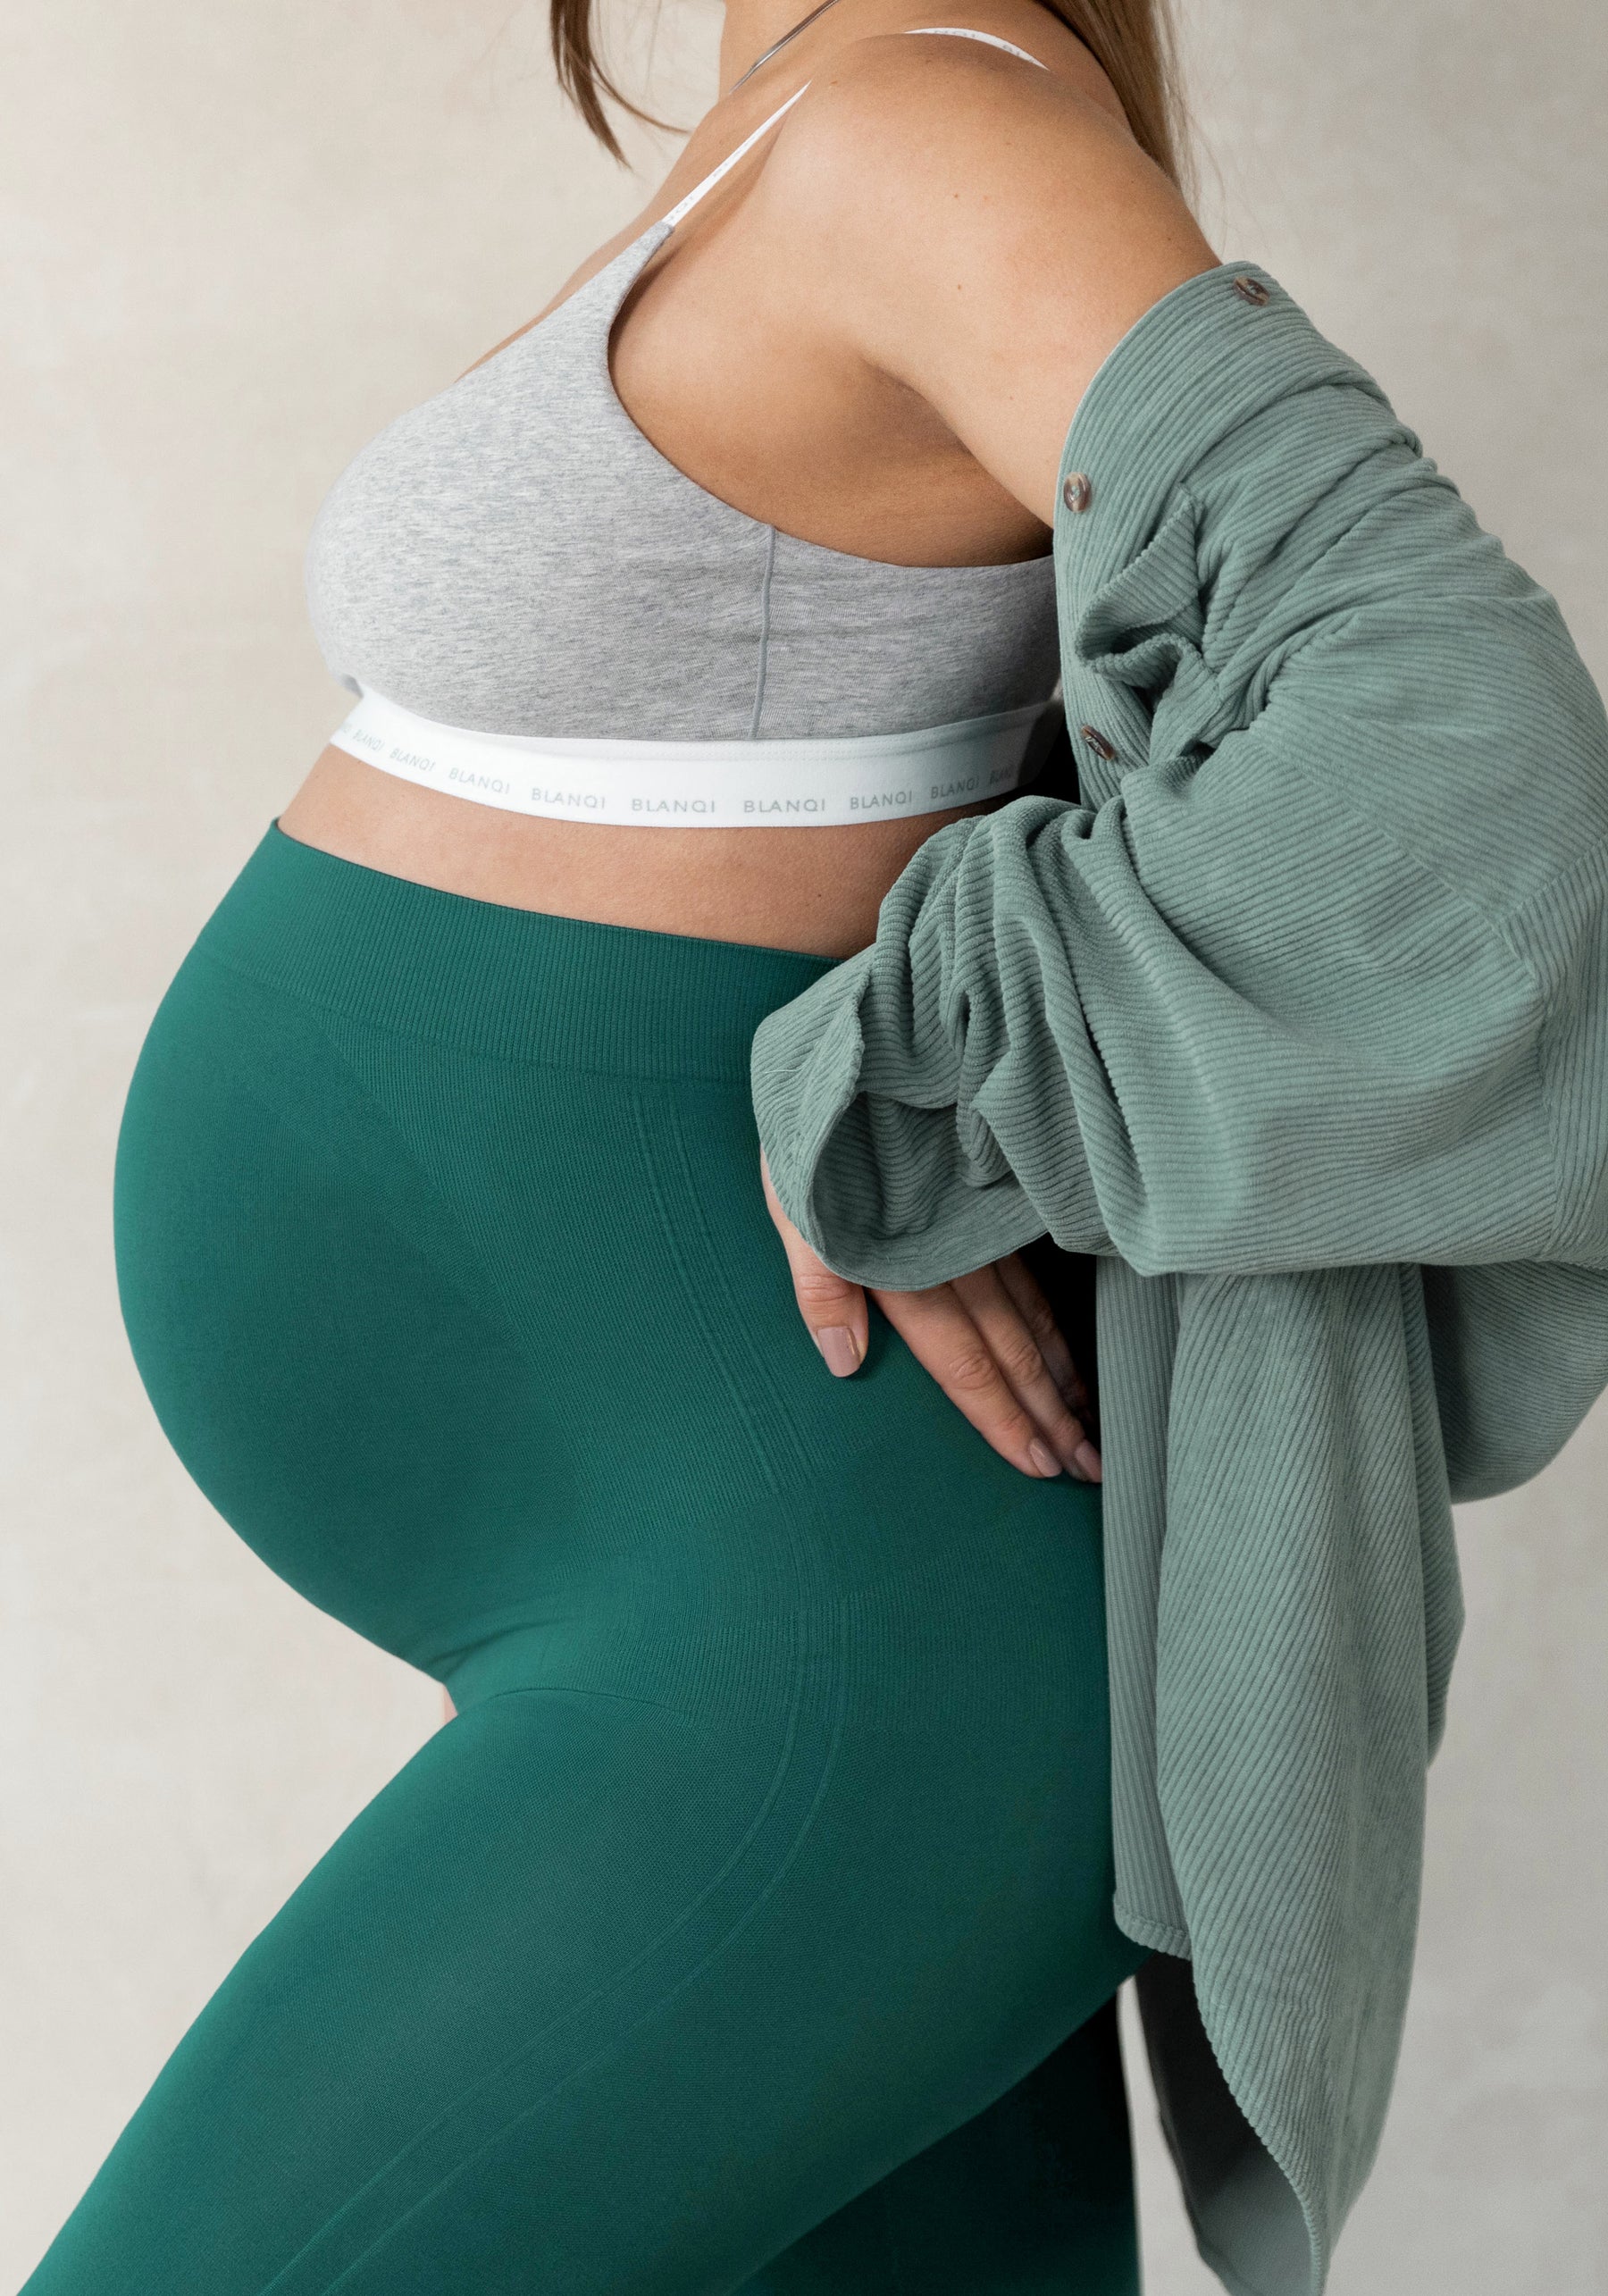 V VOCNI Maternity Leggings for Women Over The Belly Pregnant Leggings  Workout Lounge Pregnancy Pants